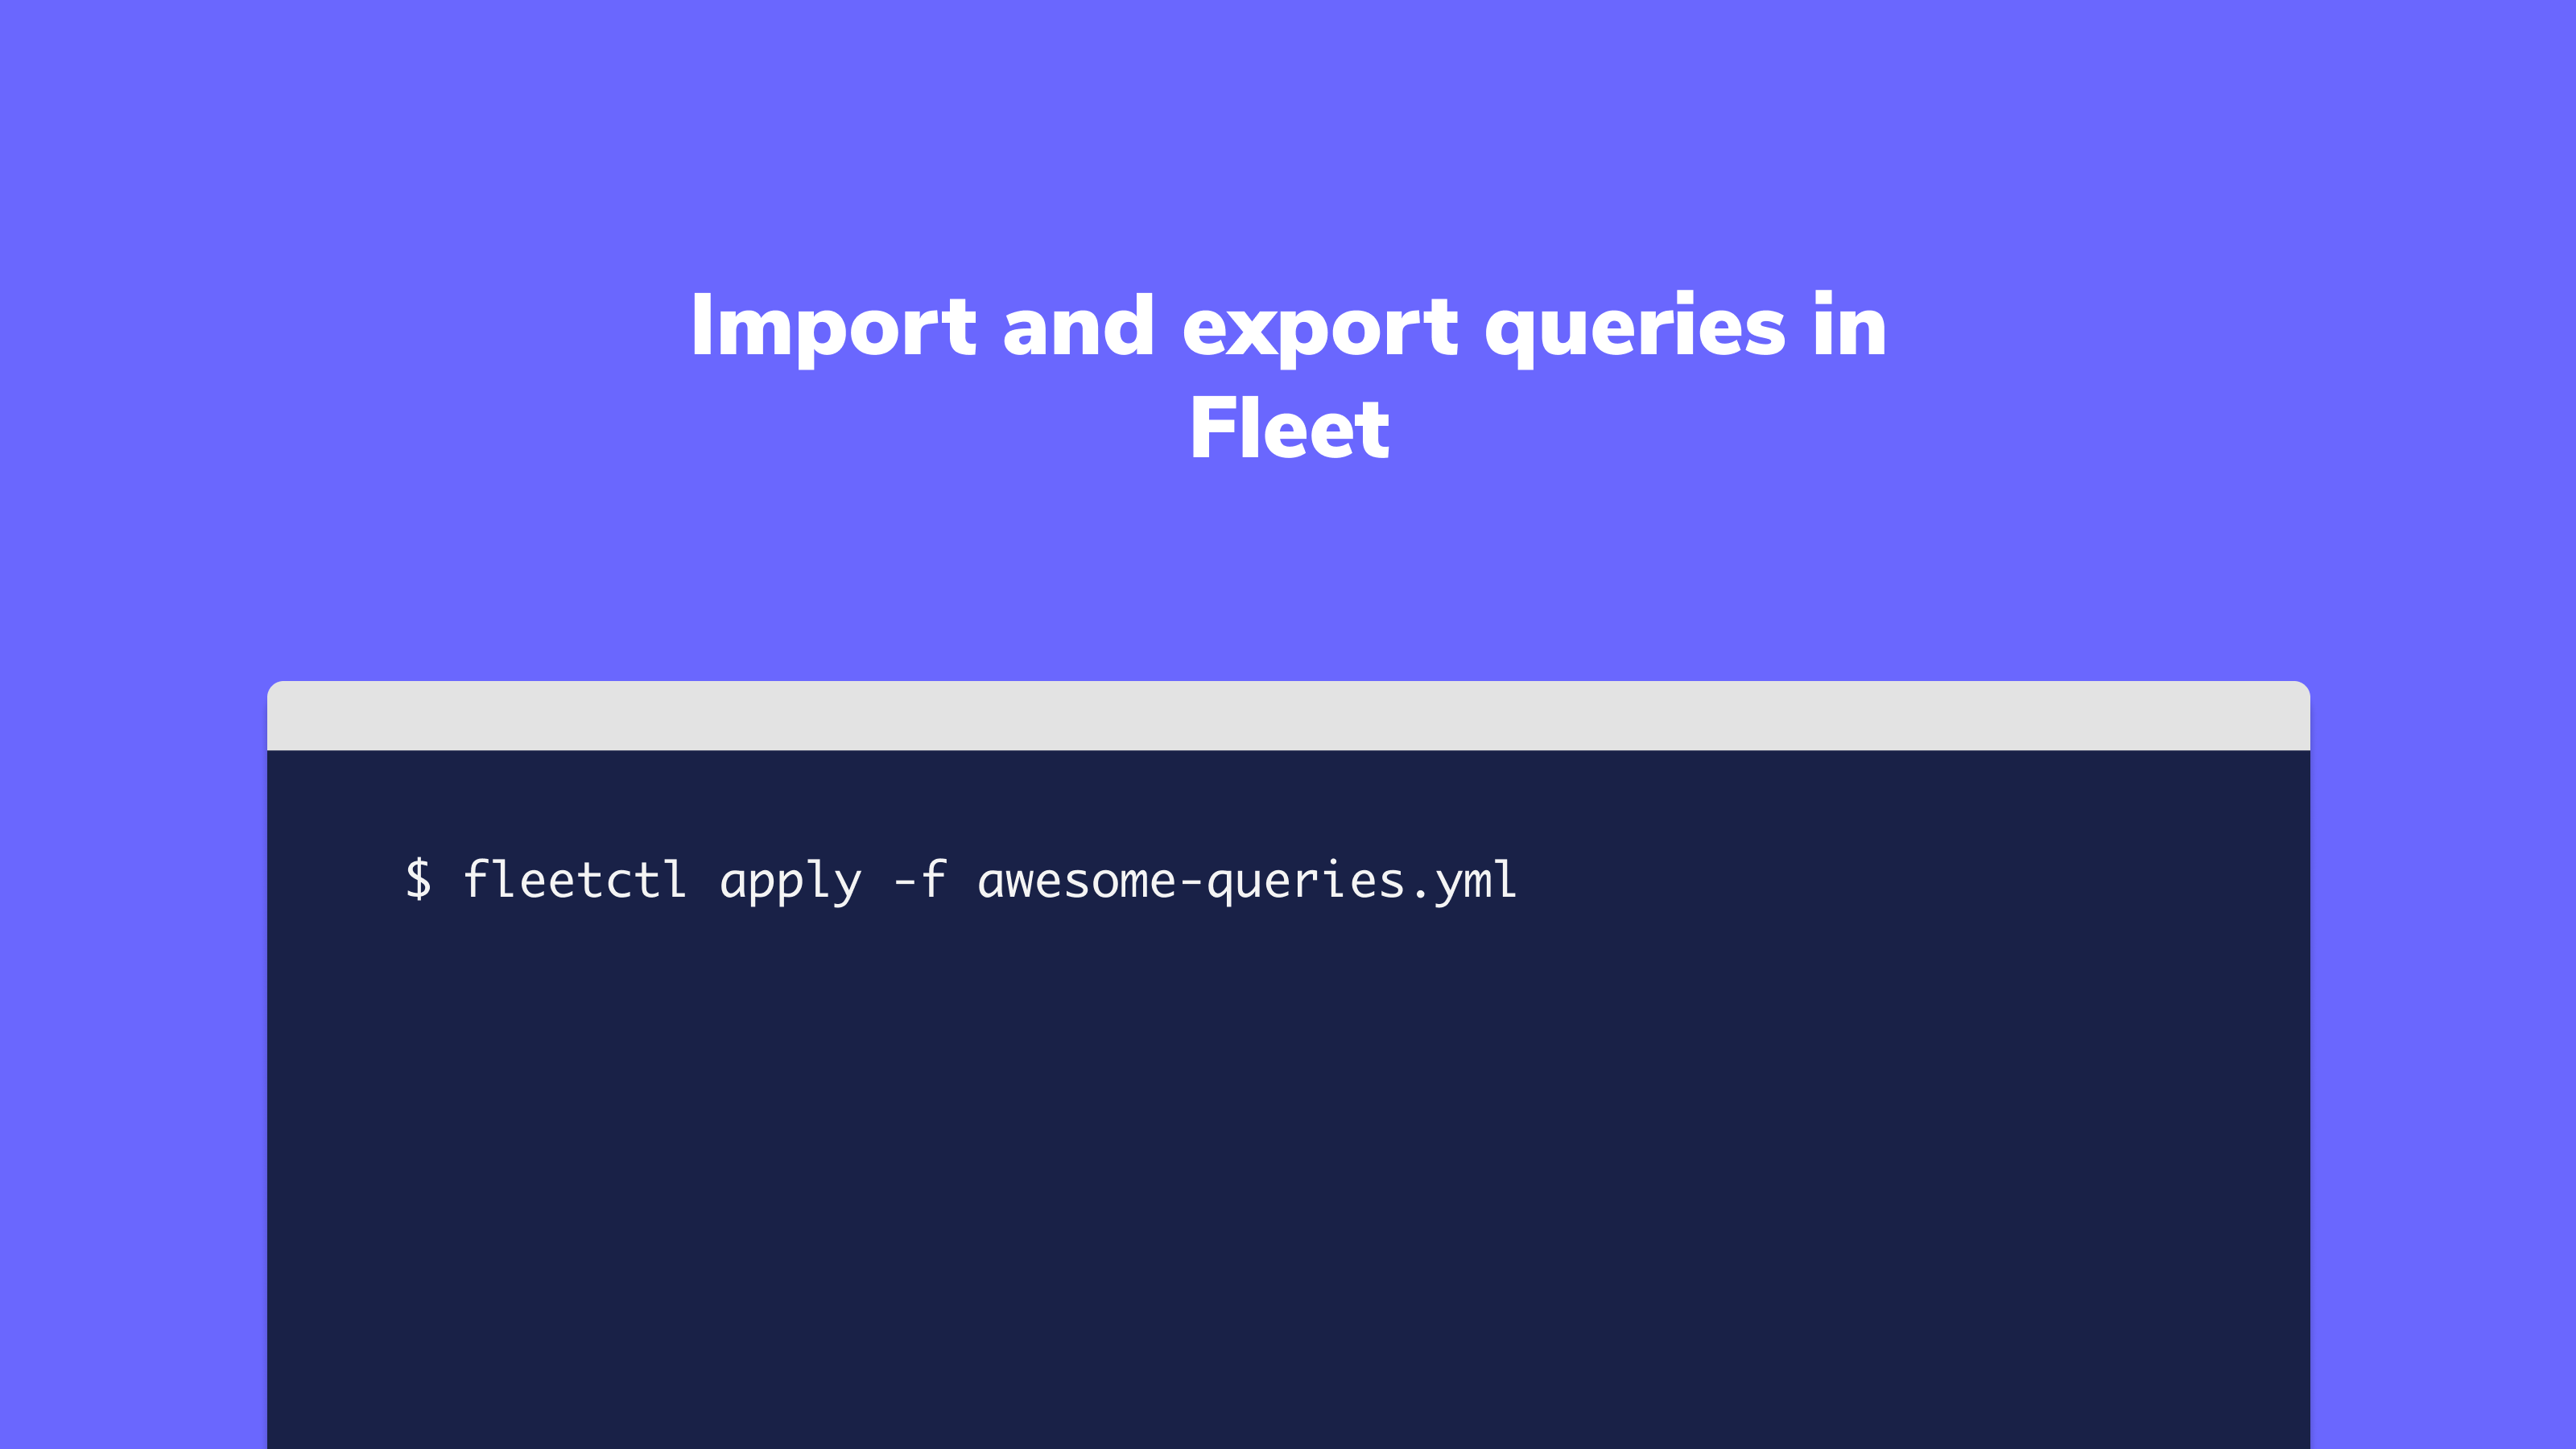 Import and export queries in Fleet